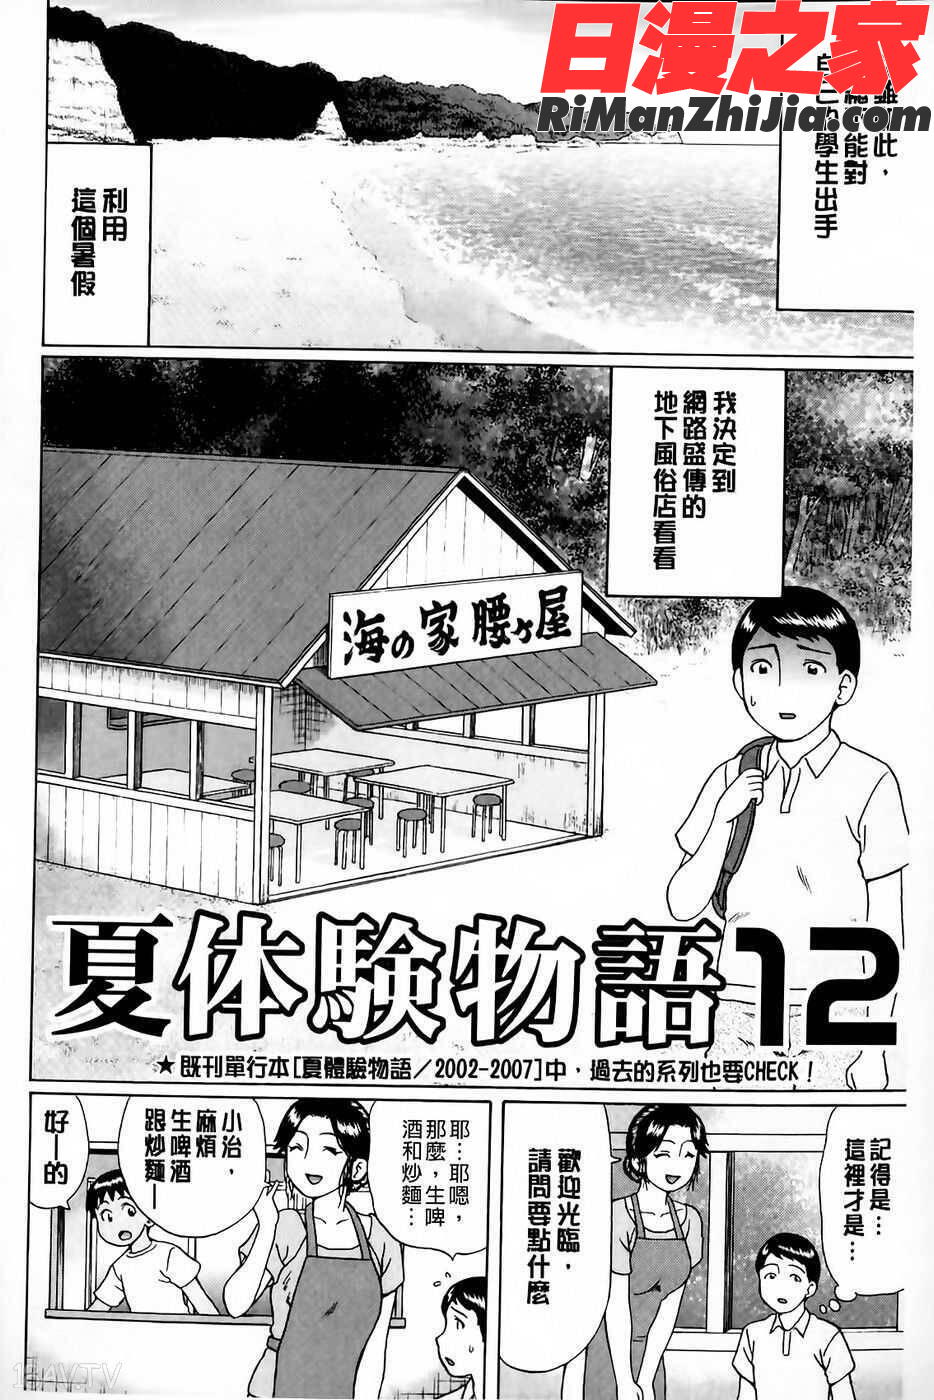 童貞卒業漫画 免费阅读 整部漫画 61.jpg